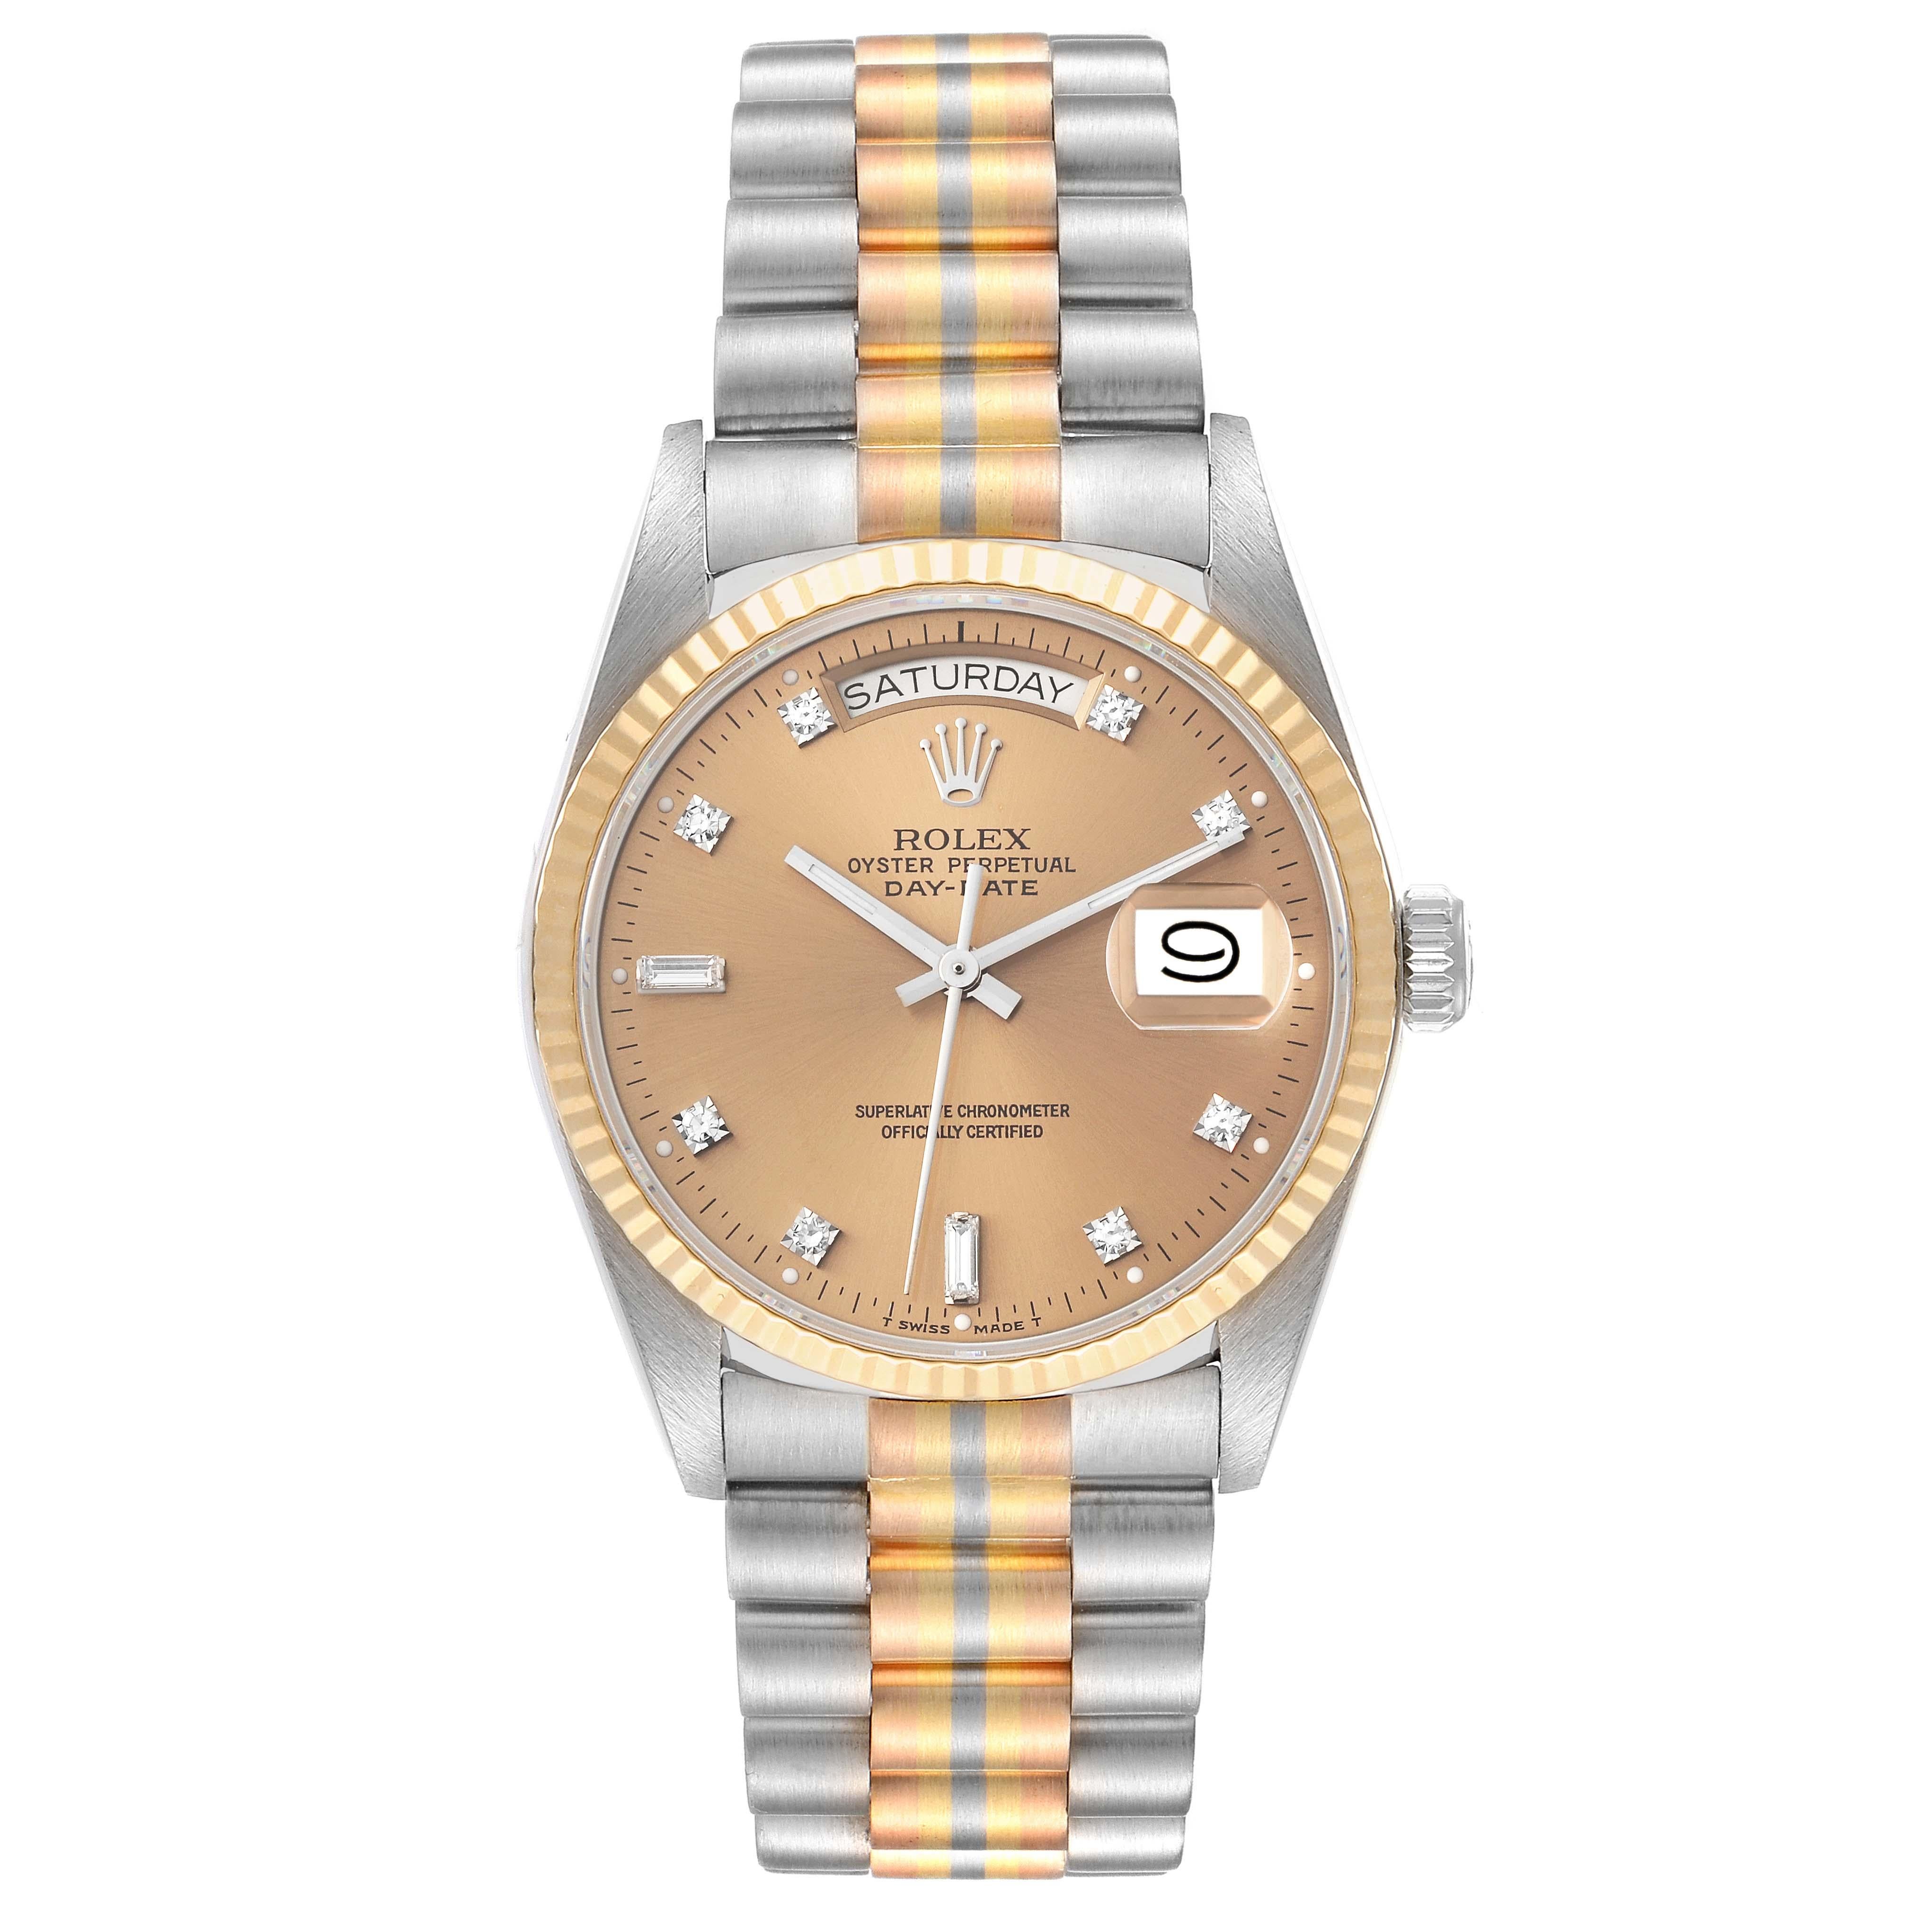 Rolex President Day-Date Tridor White Yellow Rose Gold Diamond Mens Watch 18039. Mouvement à remontage automatique, certifié officiellement chronomètre, avec fonction de date à réglage rapide. Boîtier oyster en or blanc 18k de 36,0 mm de diamètre.